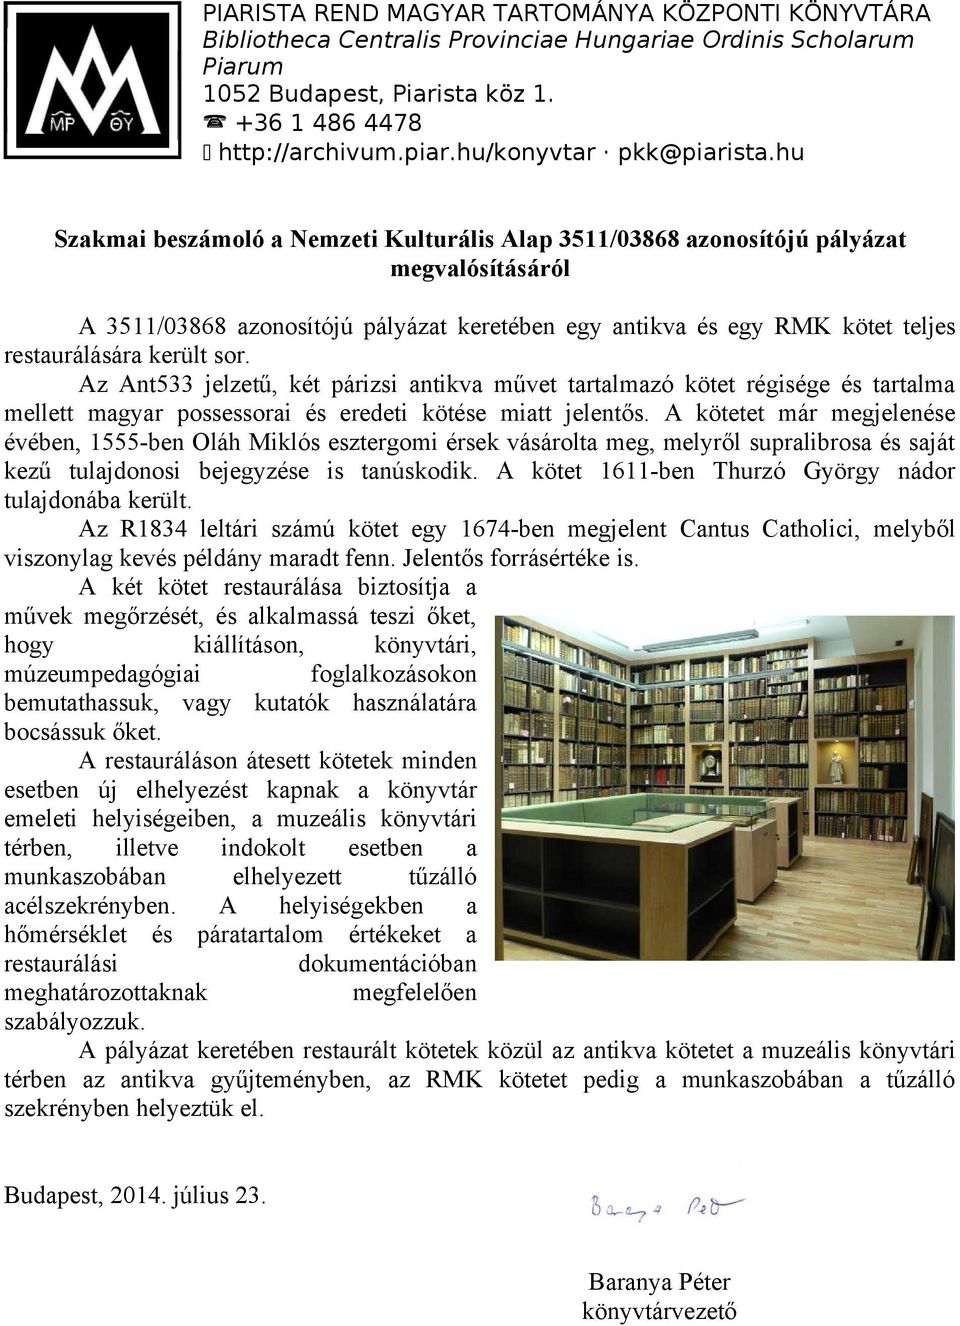 hu Szakmai beszámoló a Nemzeti Kulturális Alap 3511/03868 azonosítójú pályázat megvalósításáról A 3511/03868 azonosítójú pályázat keretében egy antikva és egy RMK kötet teljes restaurálására került